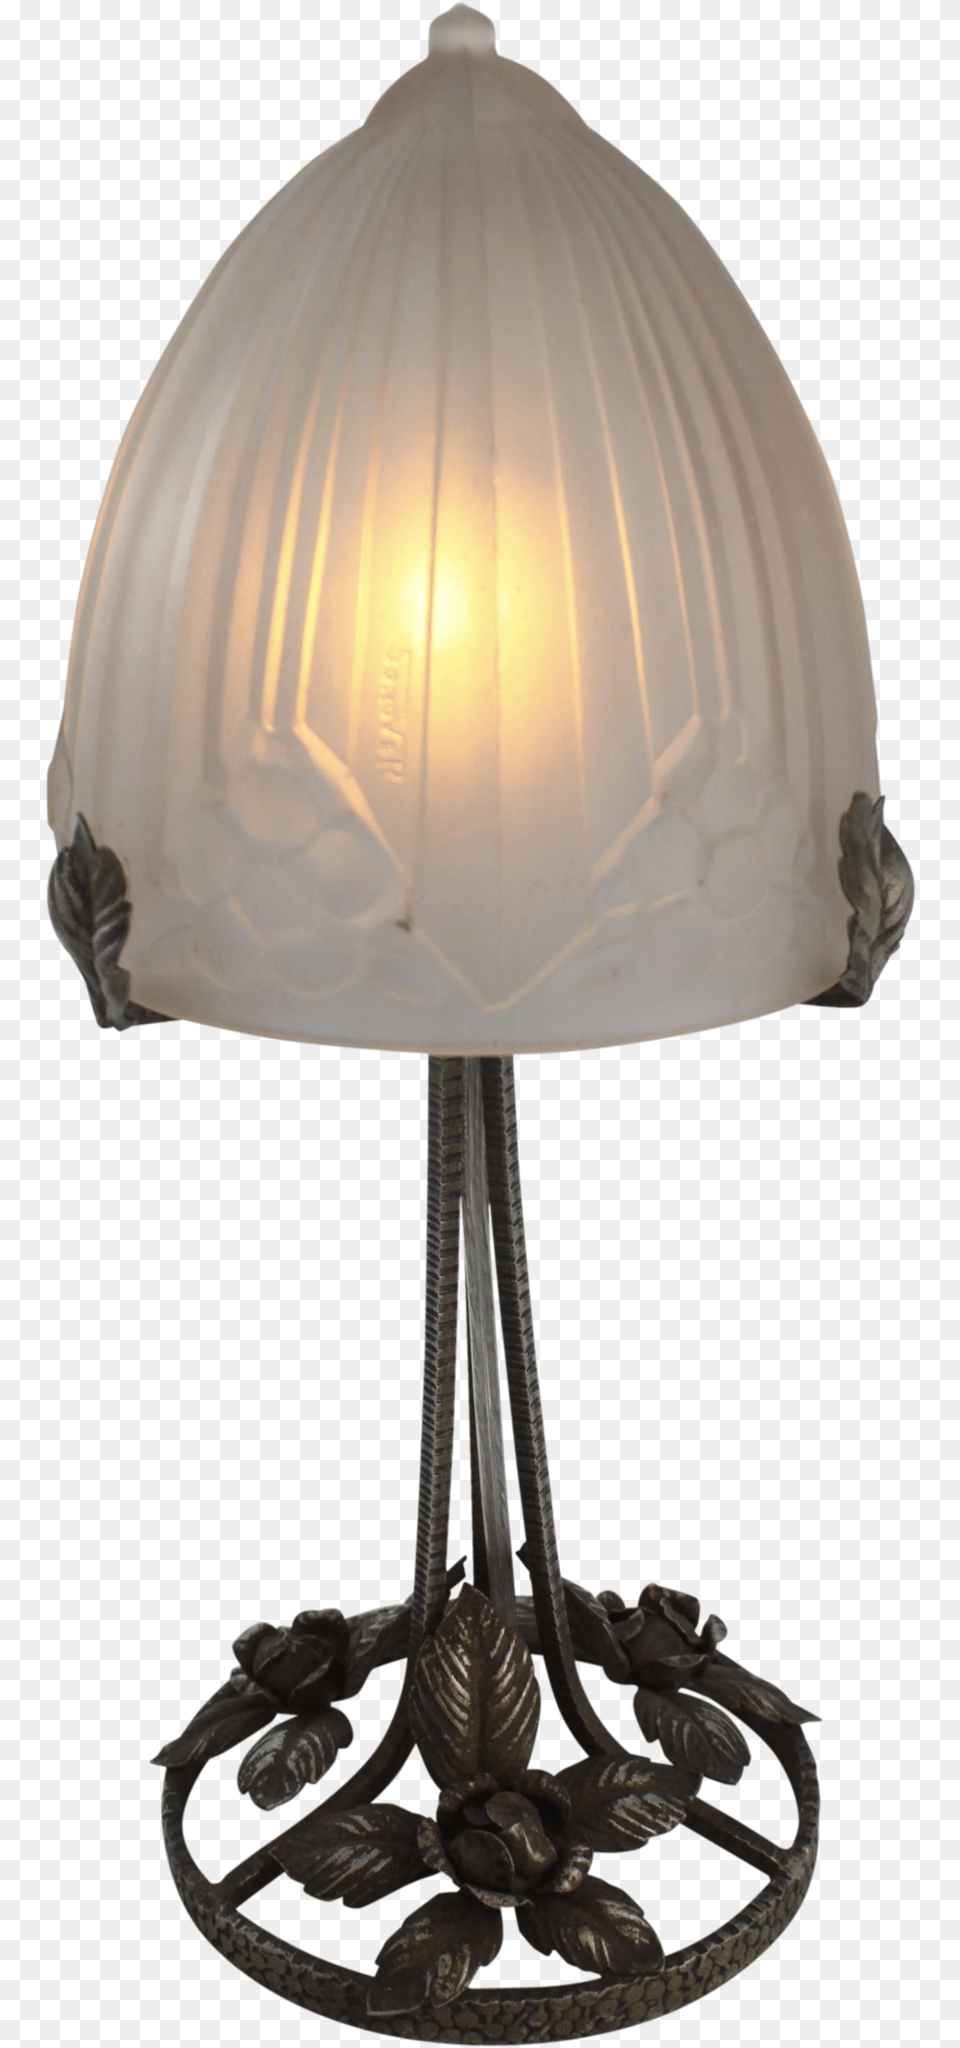 Download Hd 44 Elegant Art Deco Desk Lamp Pics Light Desk Lamp, Lampshade, Table Lamp Png Image